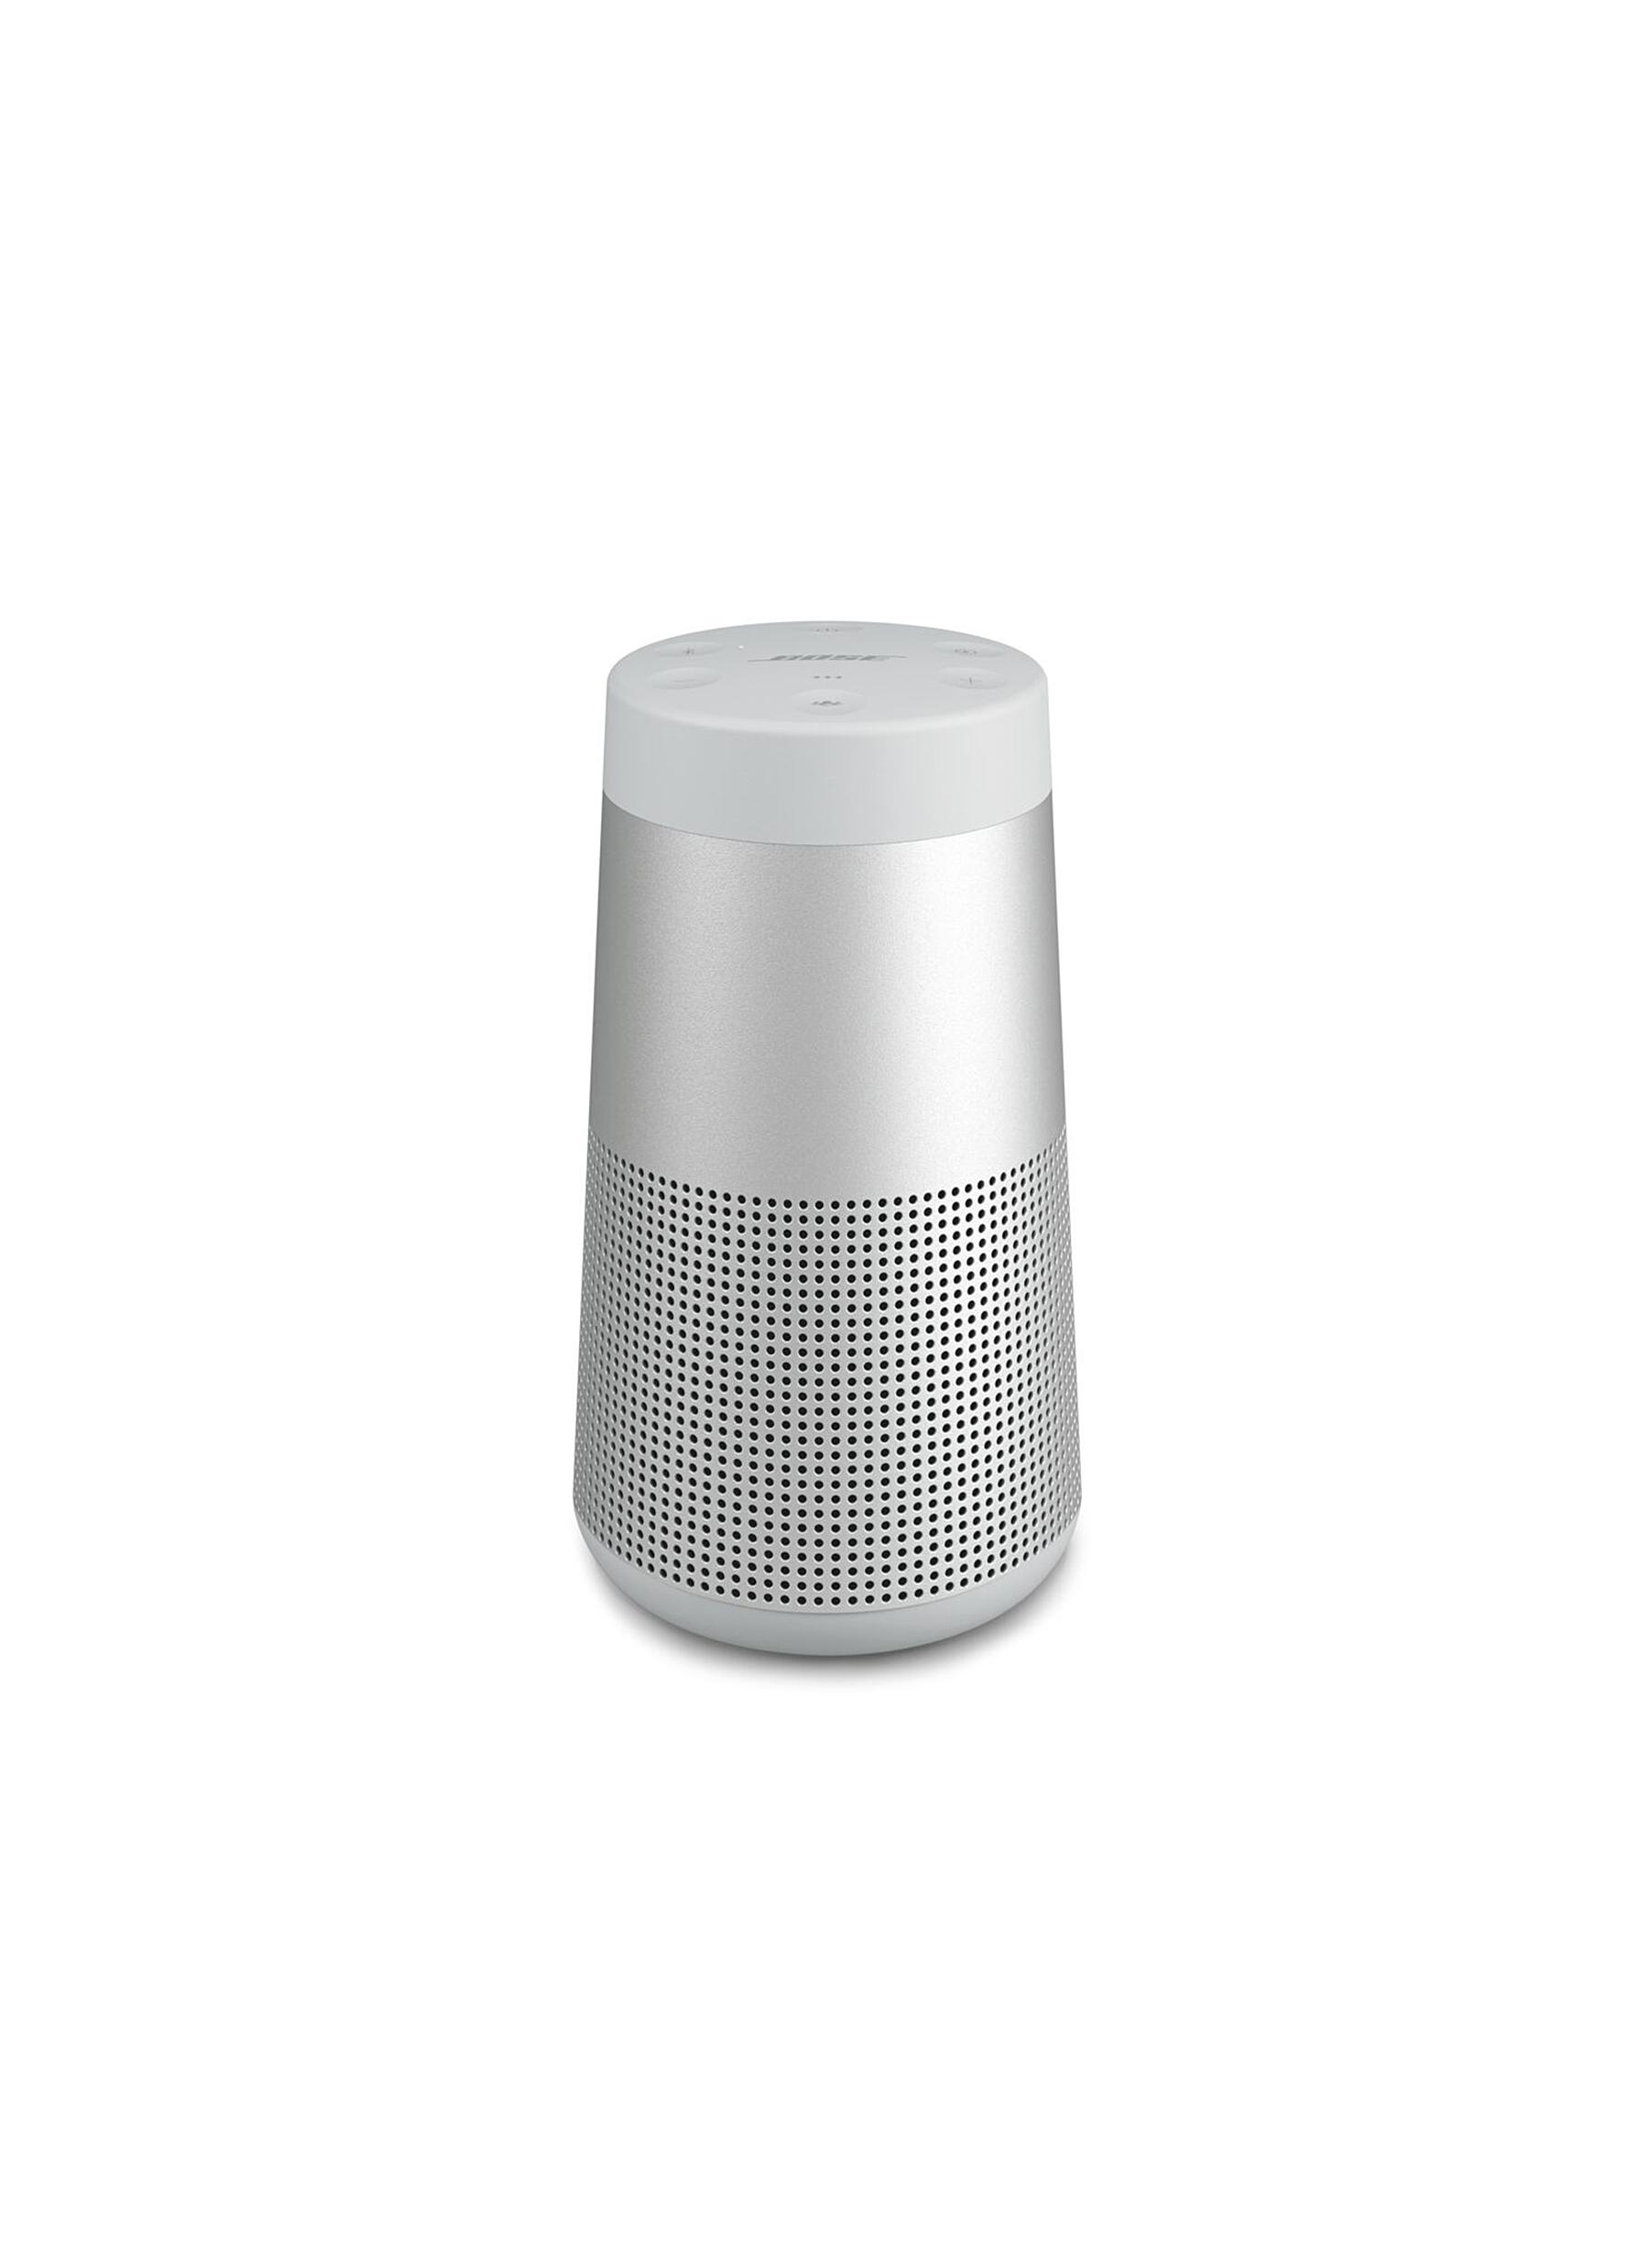 SoundLink Revolve II Wireless Speaker - Luxe Silver